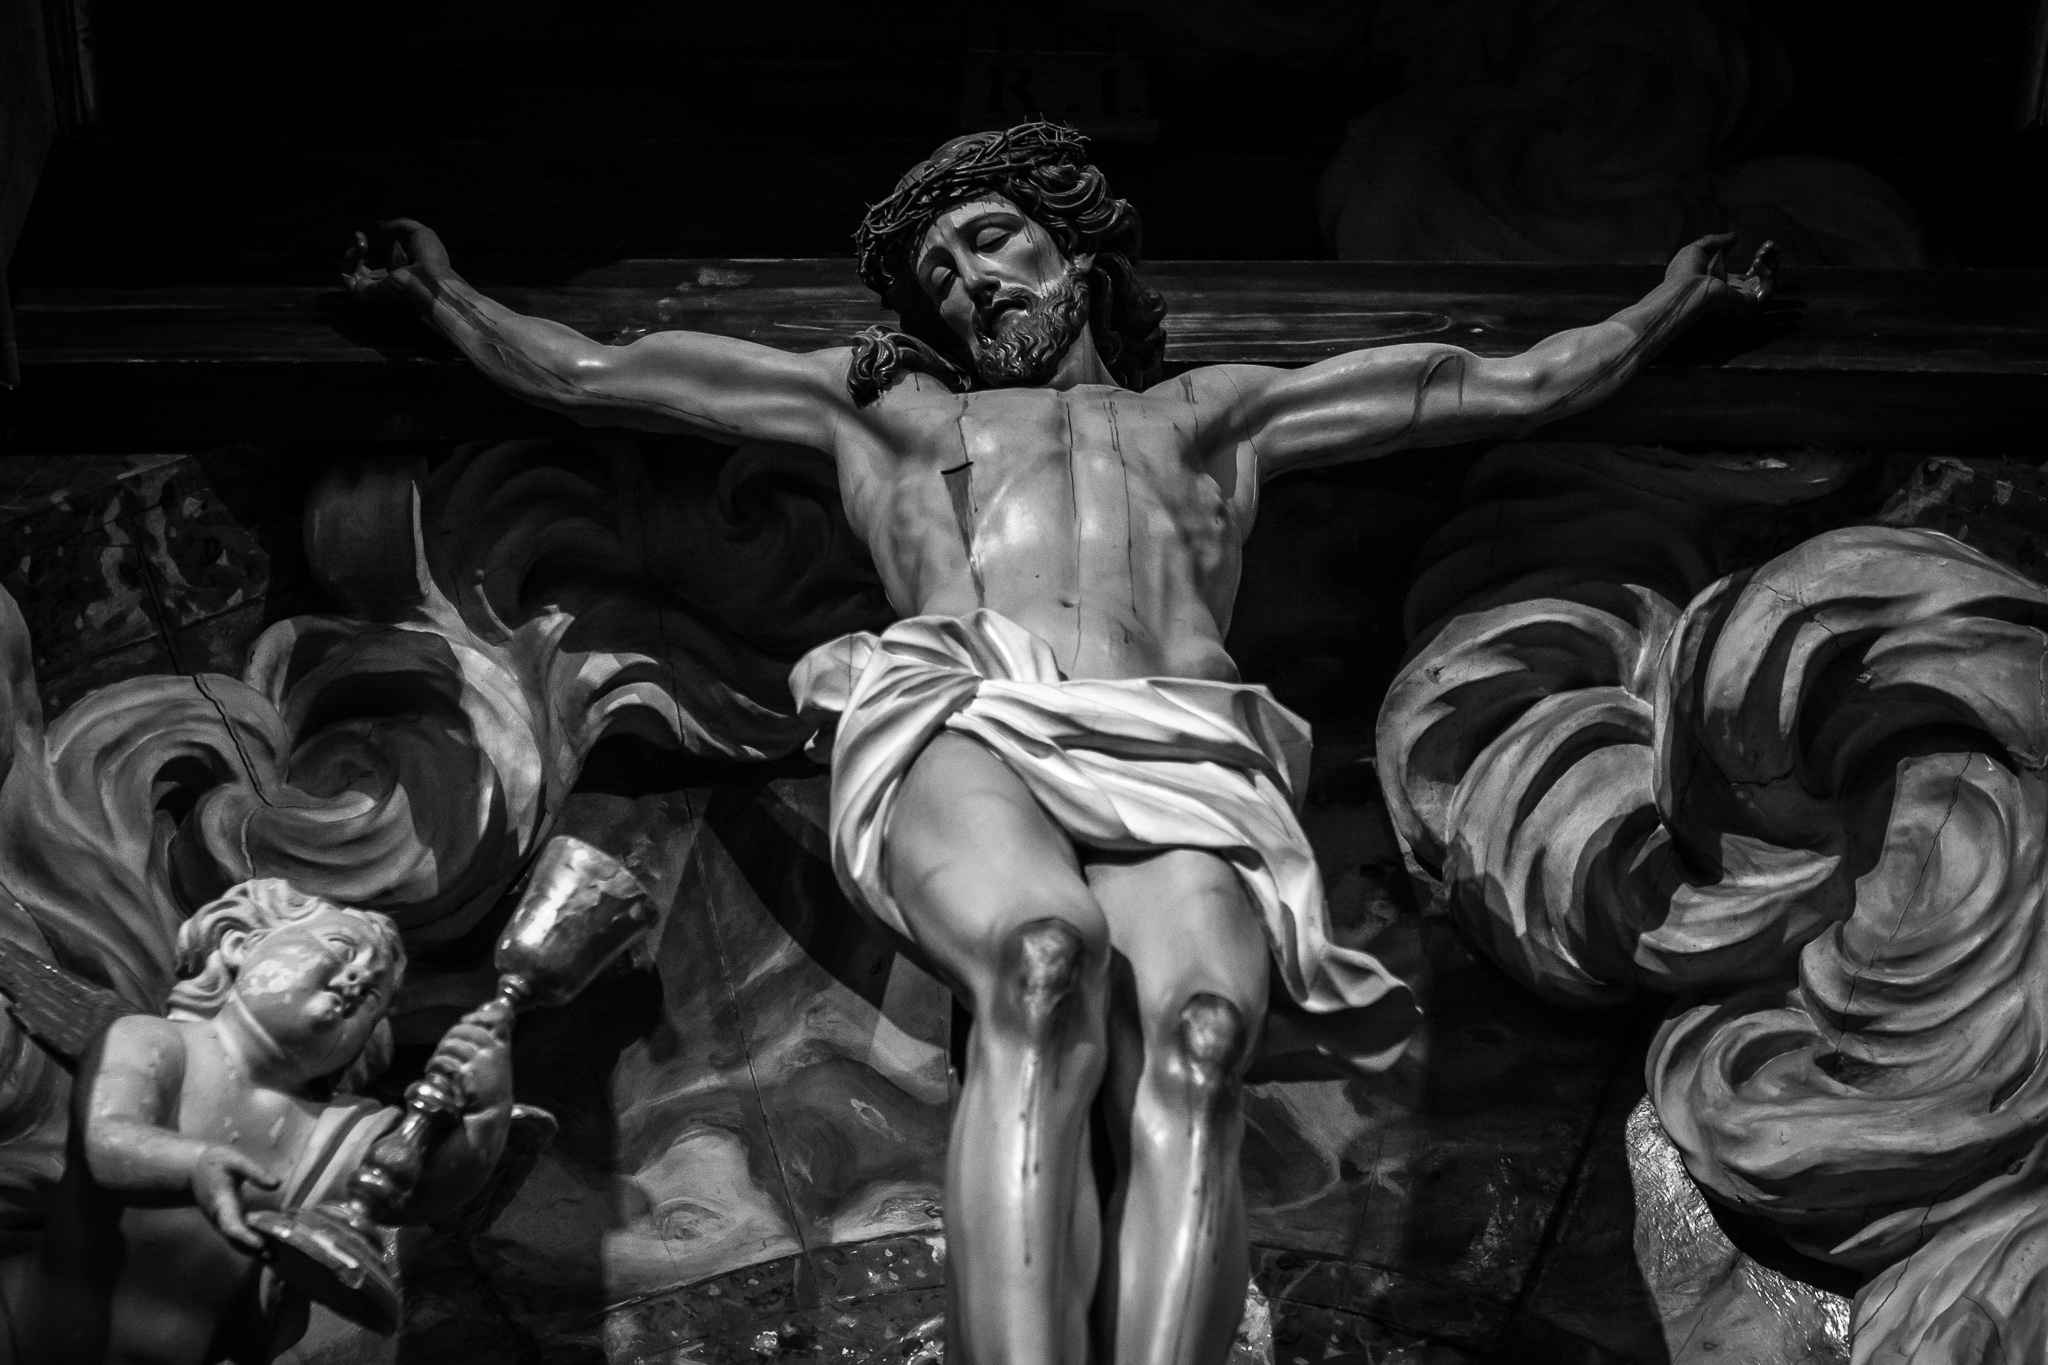 El retablo del Cristo de la Paciencia, del escultor Xosé Ferreiro, se encuentra en el monasterio compostelano de San Martiño Pinario. <br>El escultor, natural de Noia, es uno de los mayores exponentes del neoclasicismo gallego del s.XIX.